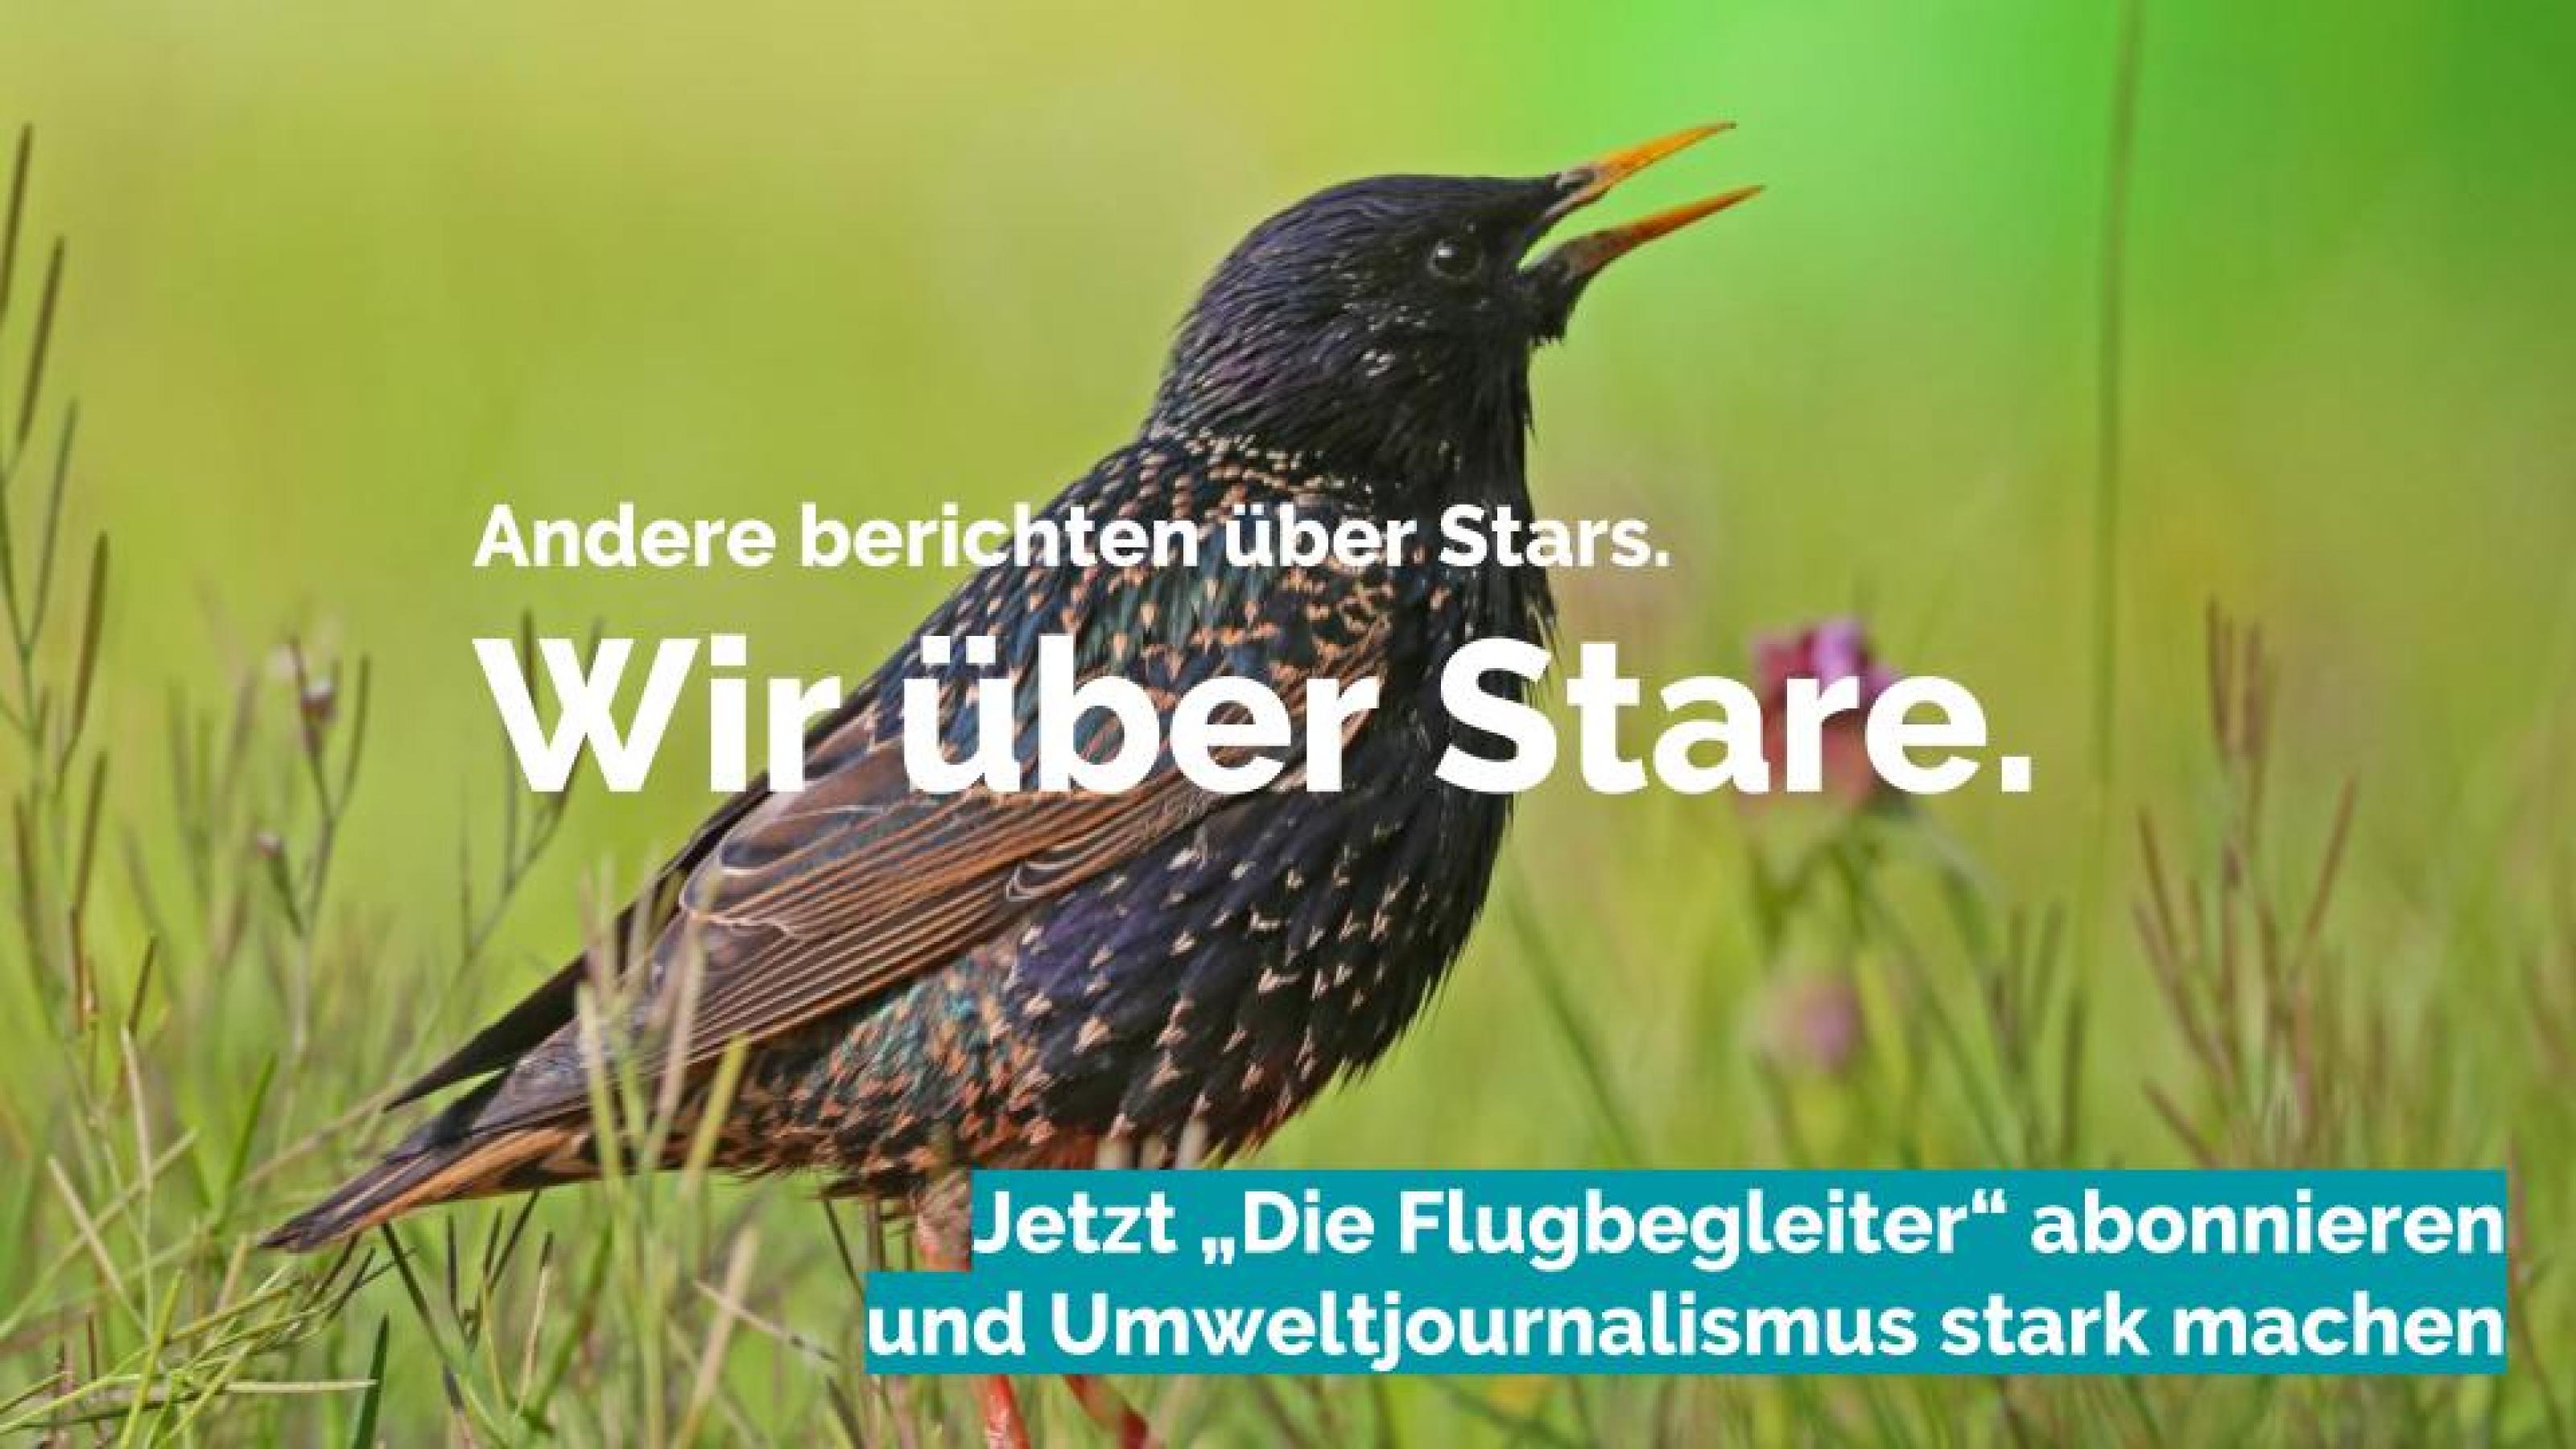 Bild eines Stars. Darüber steht geschrieben „Andere berichten über Stars. Wir über Stare.“ und „Jetzt “Die Flugbegleiter" abonnieren und Umweltjournalismus stark machen".